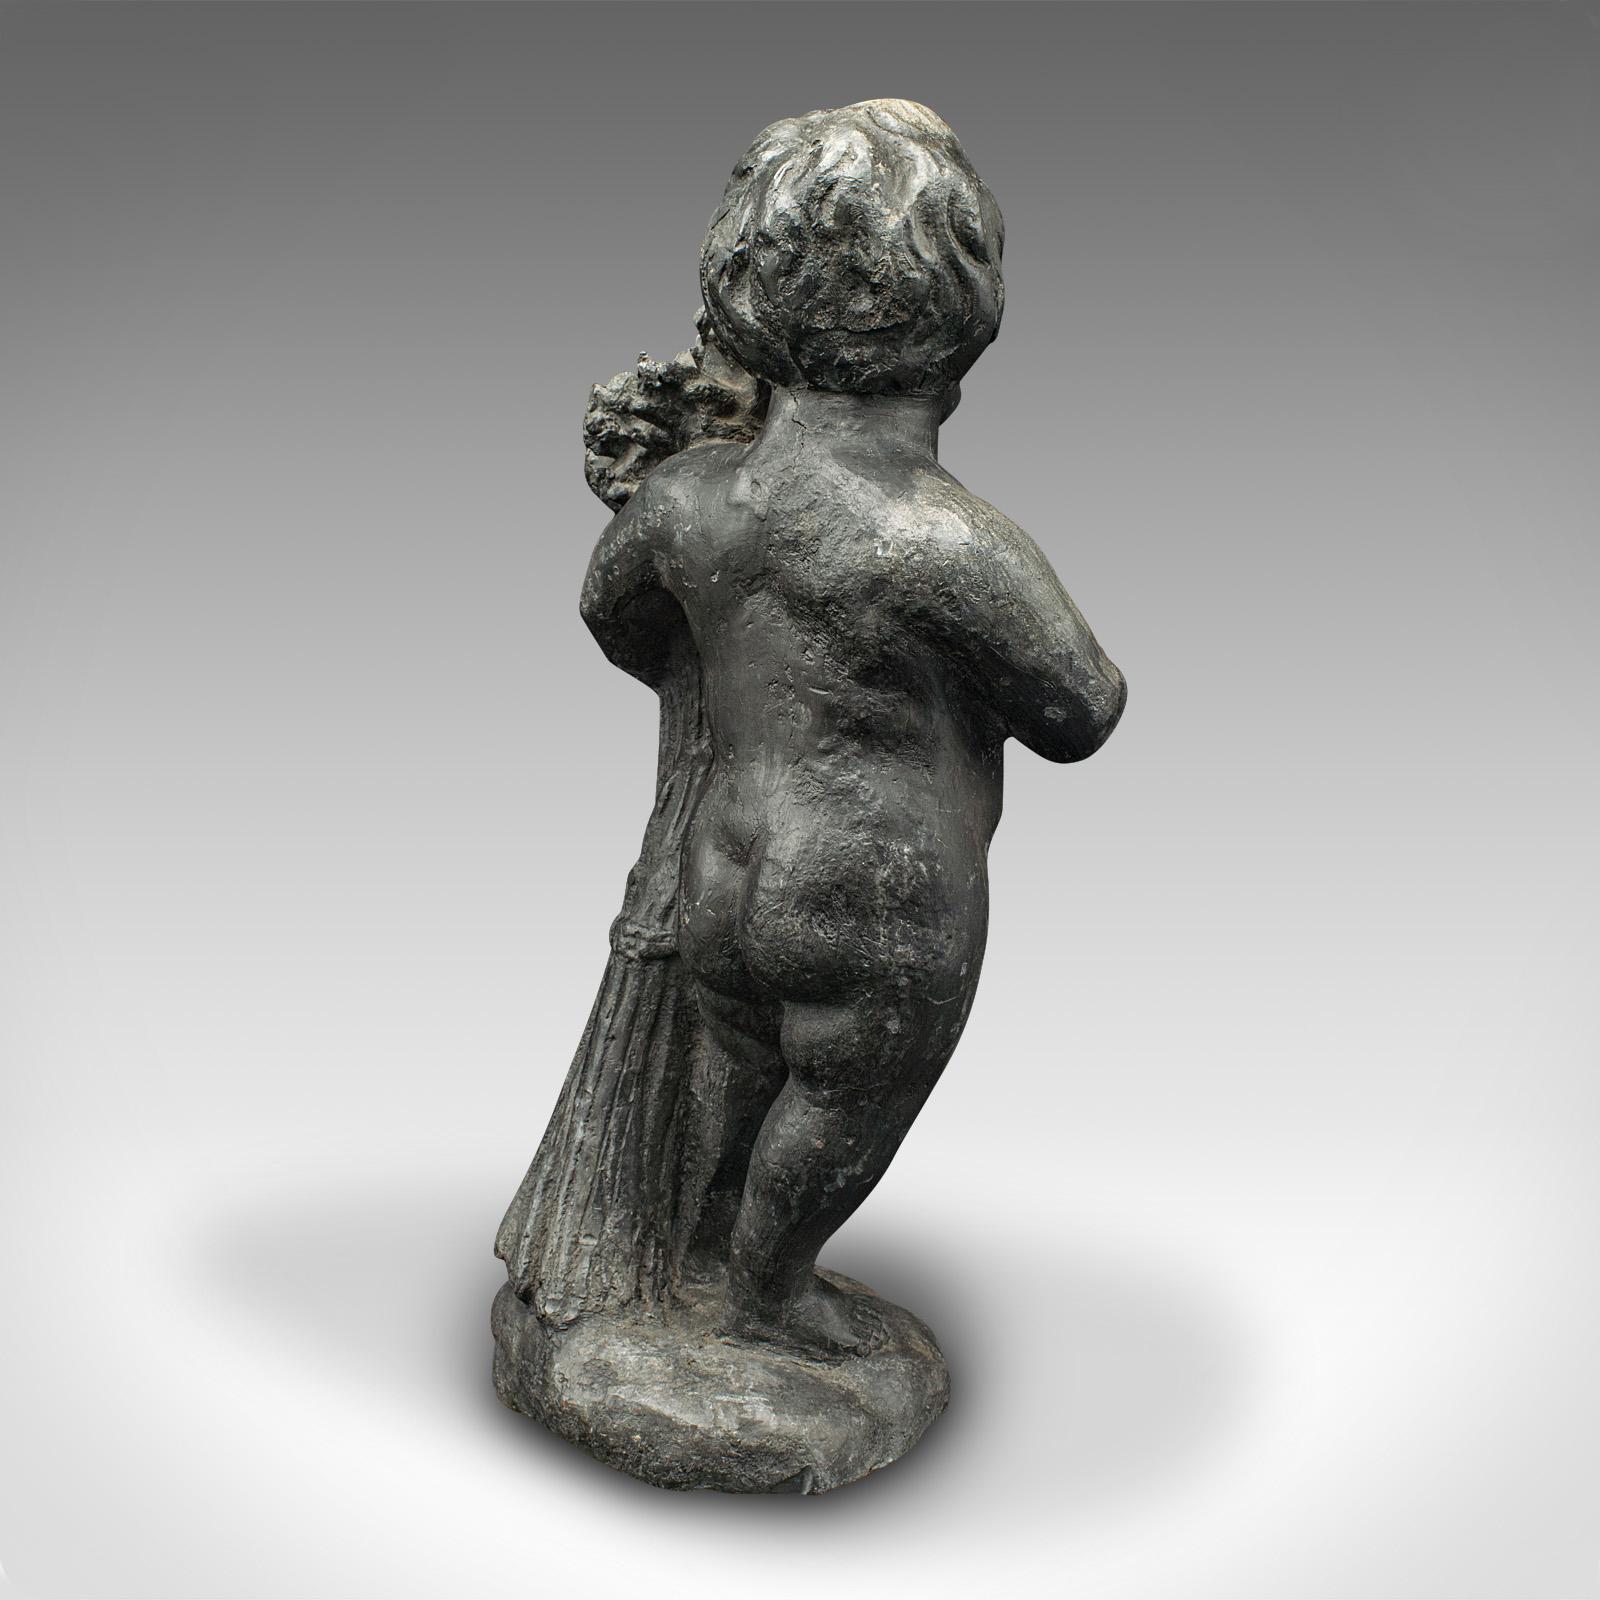 Heavy Antique Putto Figure, Italian, Lead Cherub Statue, Neoclassical, Victorian In Good Condition For Sale In Hele, Devon, GB